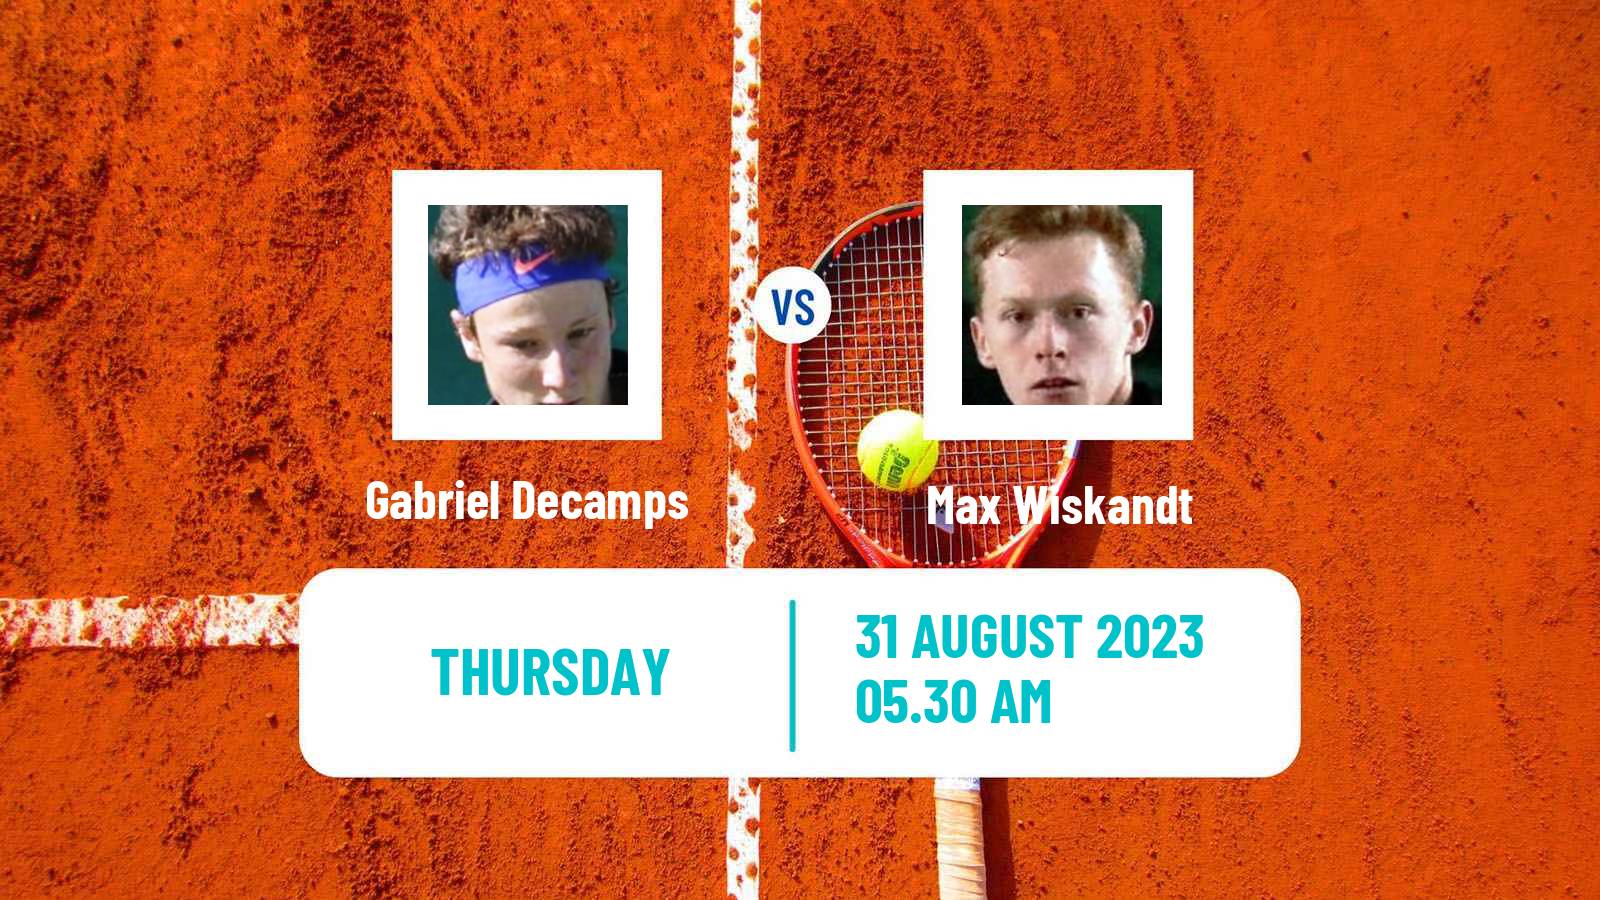 Tennis ITF M15 Budapest Men Gabriel Decamps - Max Wiskandt